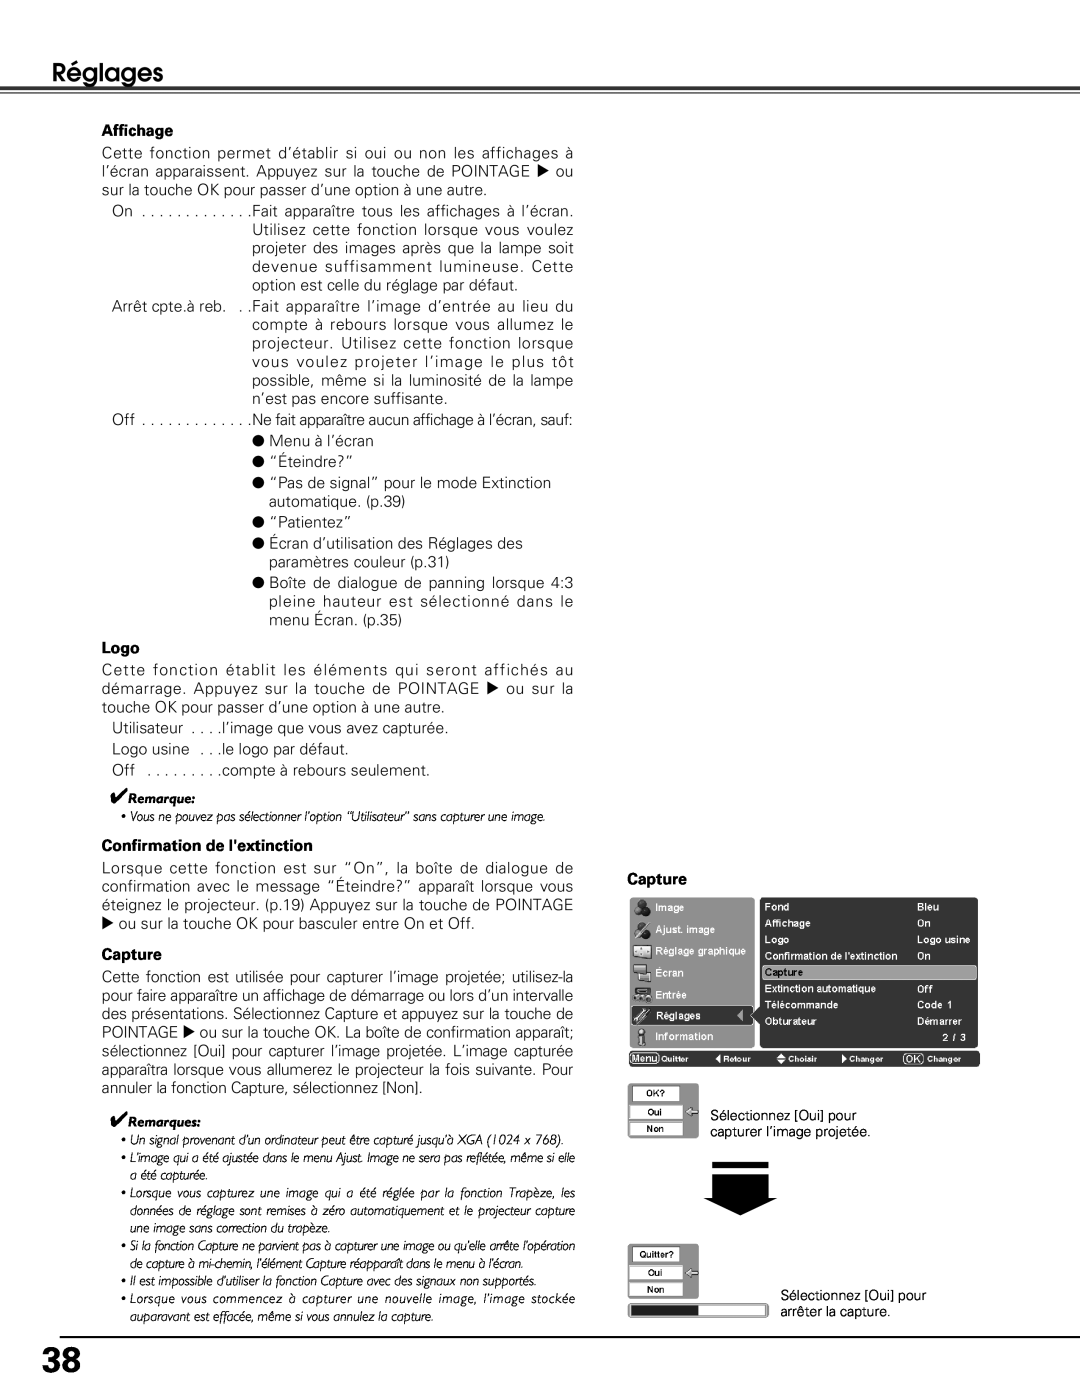 Sanyo PLV-Z5BK manual Réglages, Affichage, Logo, Confirmation de lextinction, Capture 